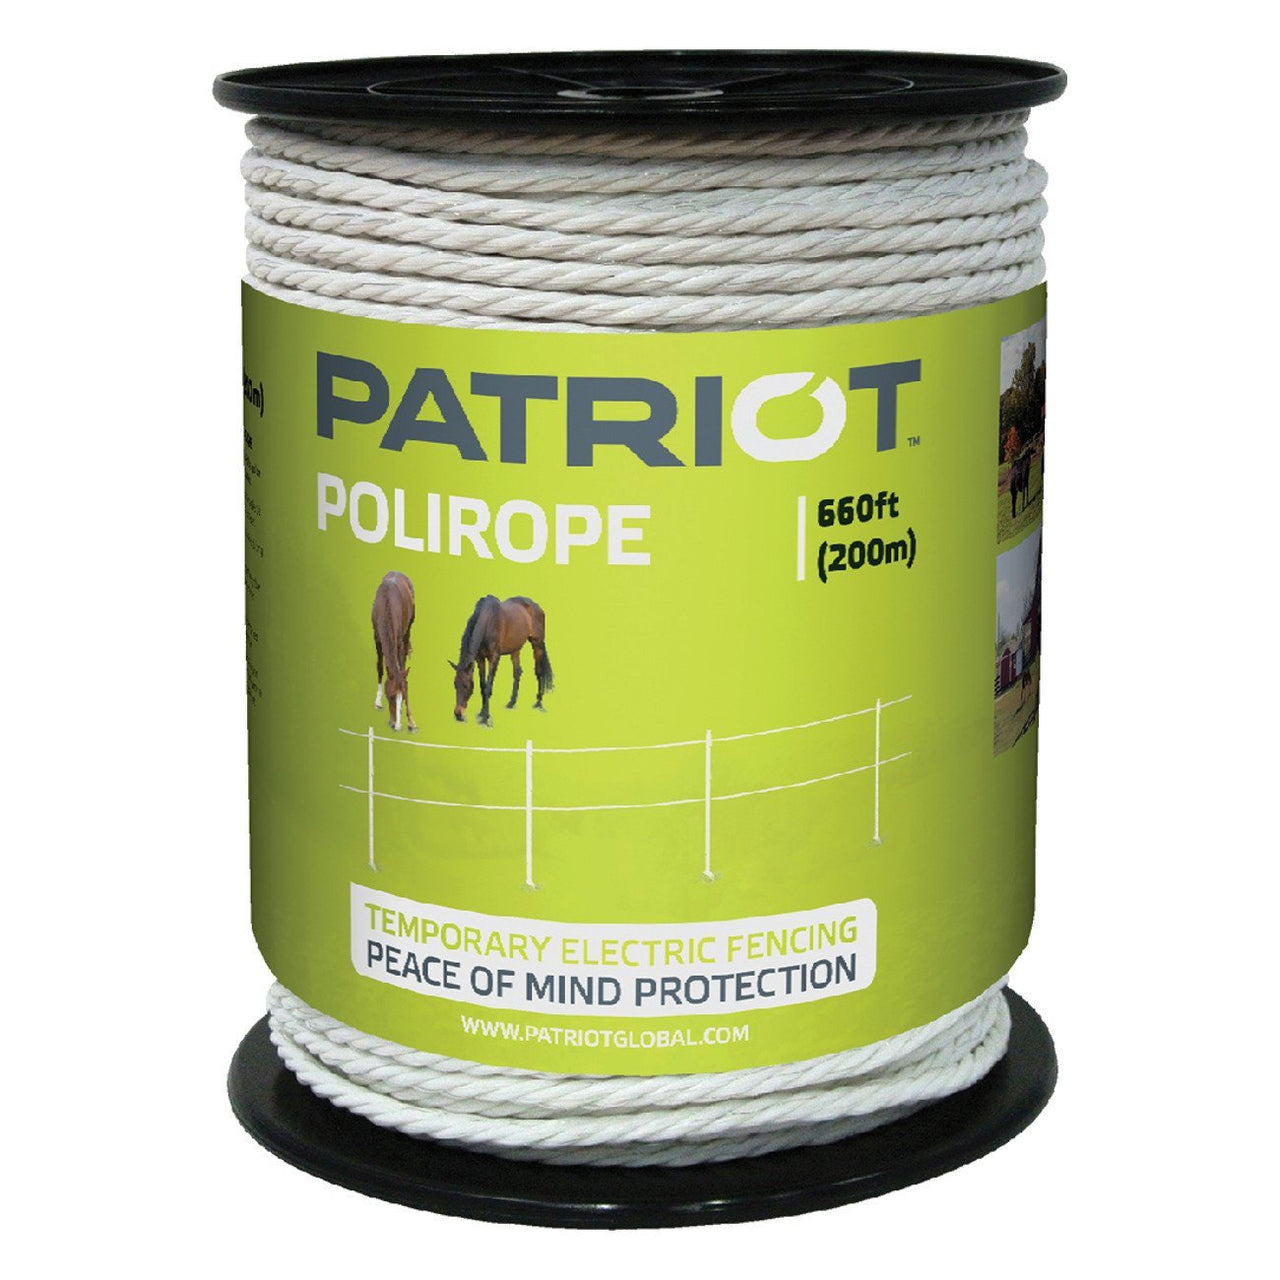 Patriot Polirope - 660 - Fencing Patriot - Canada